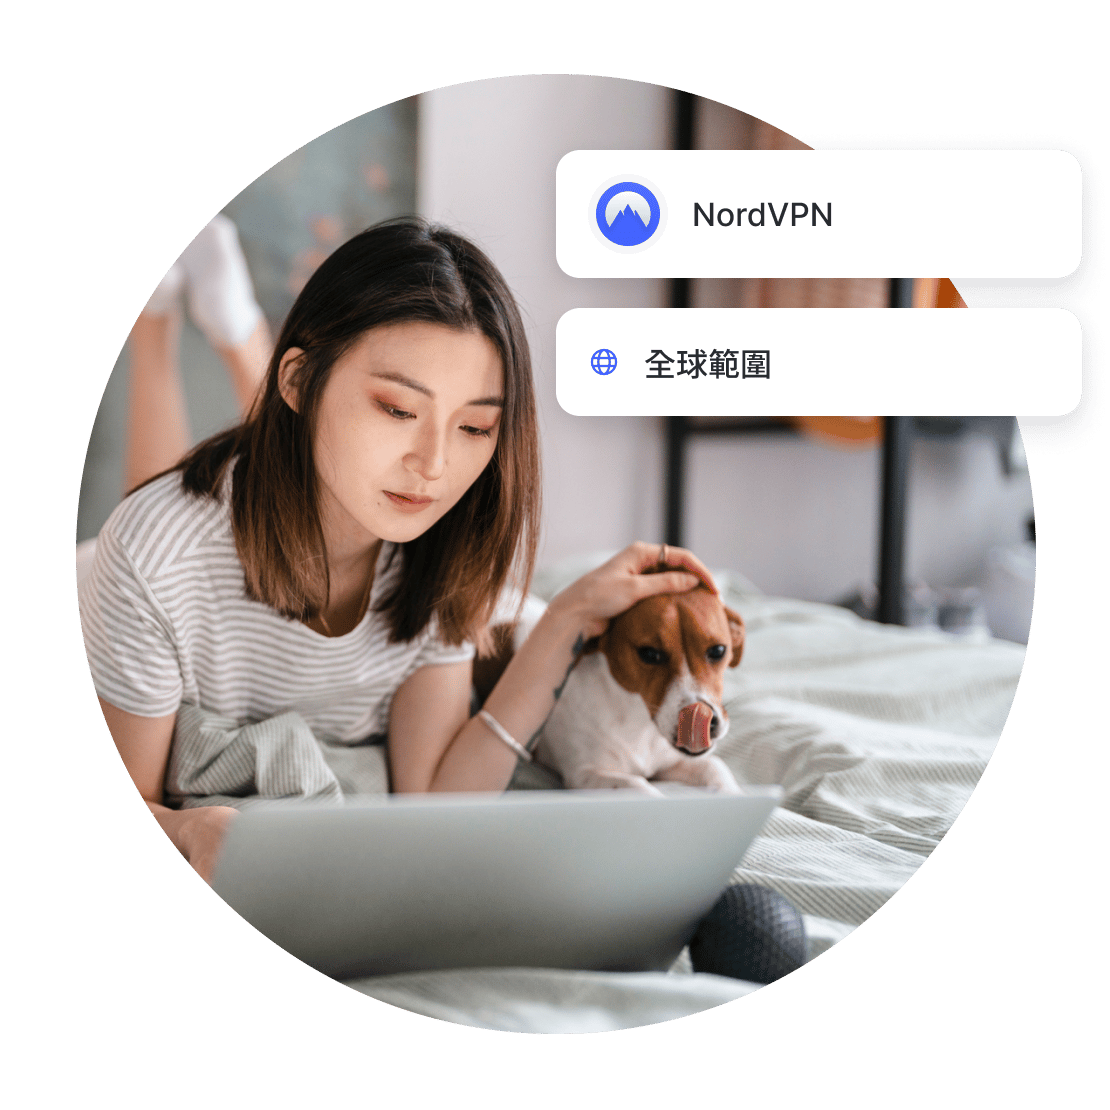 使用者可下載適合 Kodi 的 VPN，隨時隨地安全存取自己喜愛的內容。